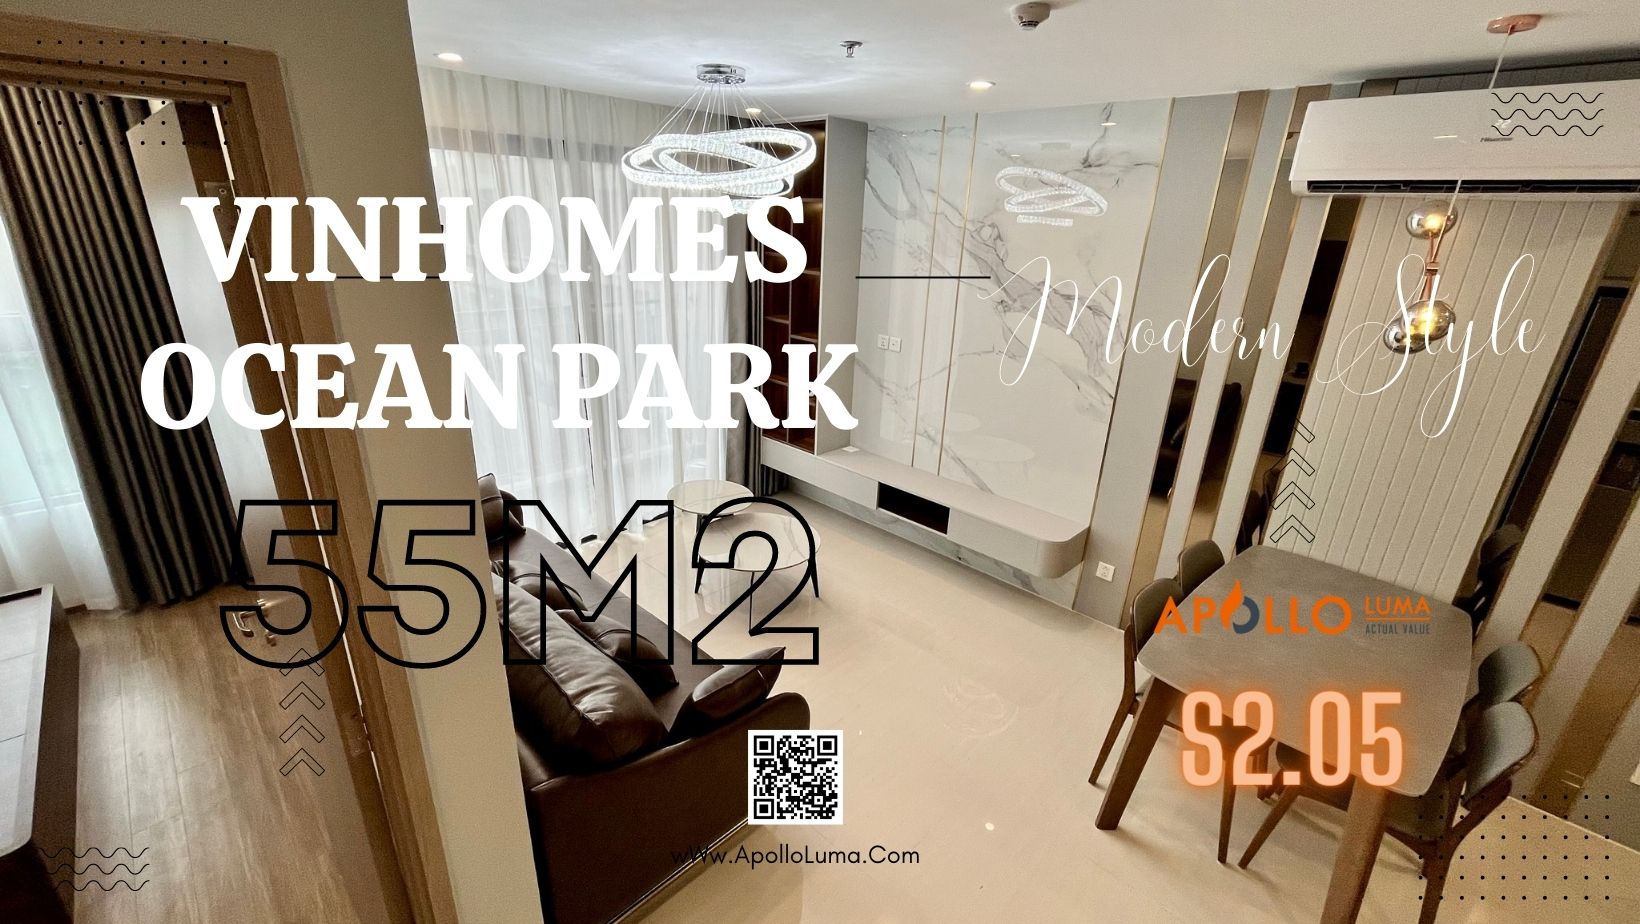 Chia sẻ hình ảnh thực tế nội thất căn hộ 55m2 Vinhomes Ocean Park